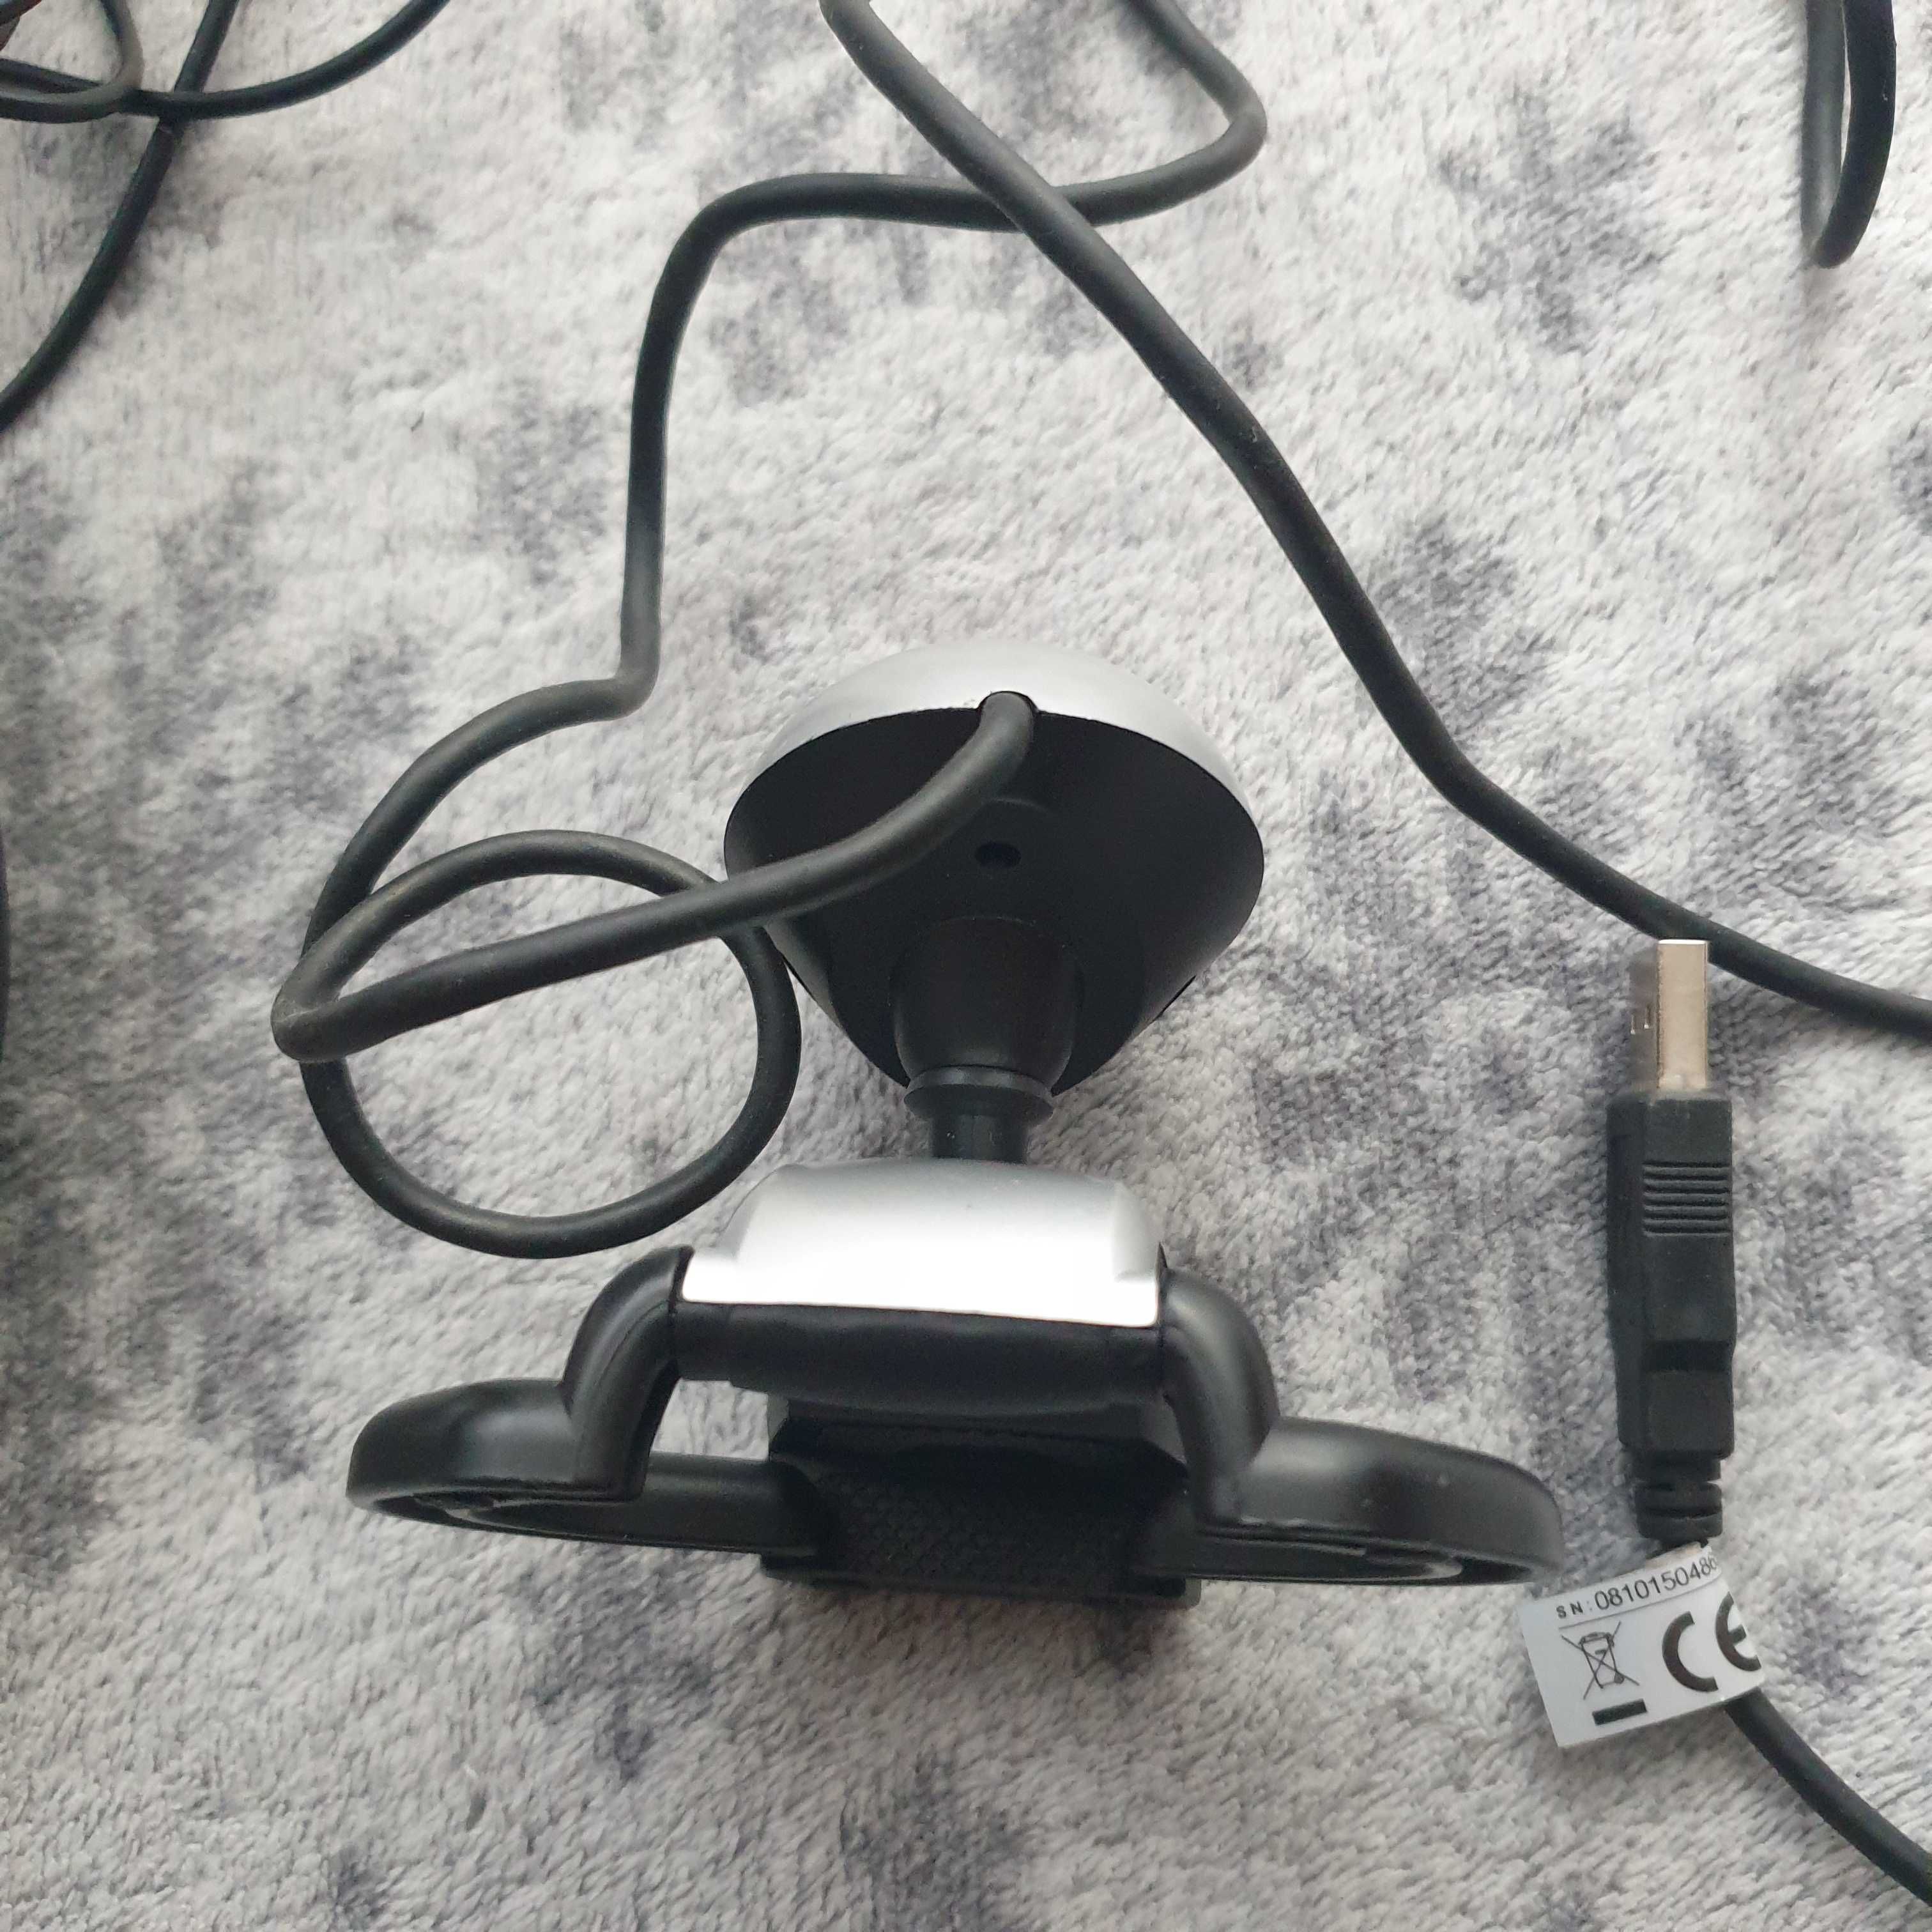 Wyprzedaż - Zestaw 2x myszka USB + kamerka internetowa